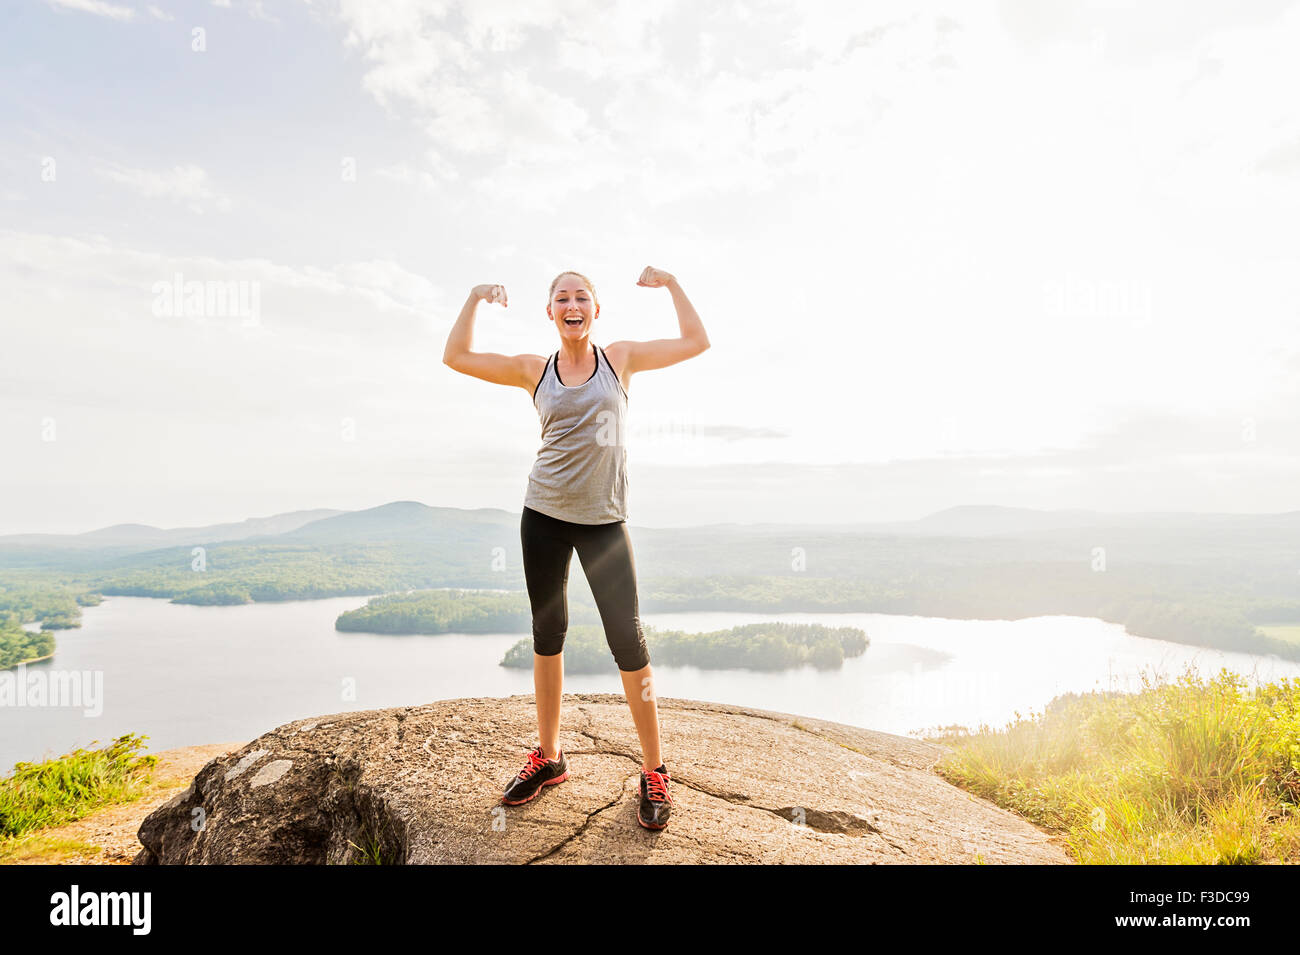 Junge Frau stand am Anfang von Berg und Muskeln Stockfoto